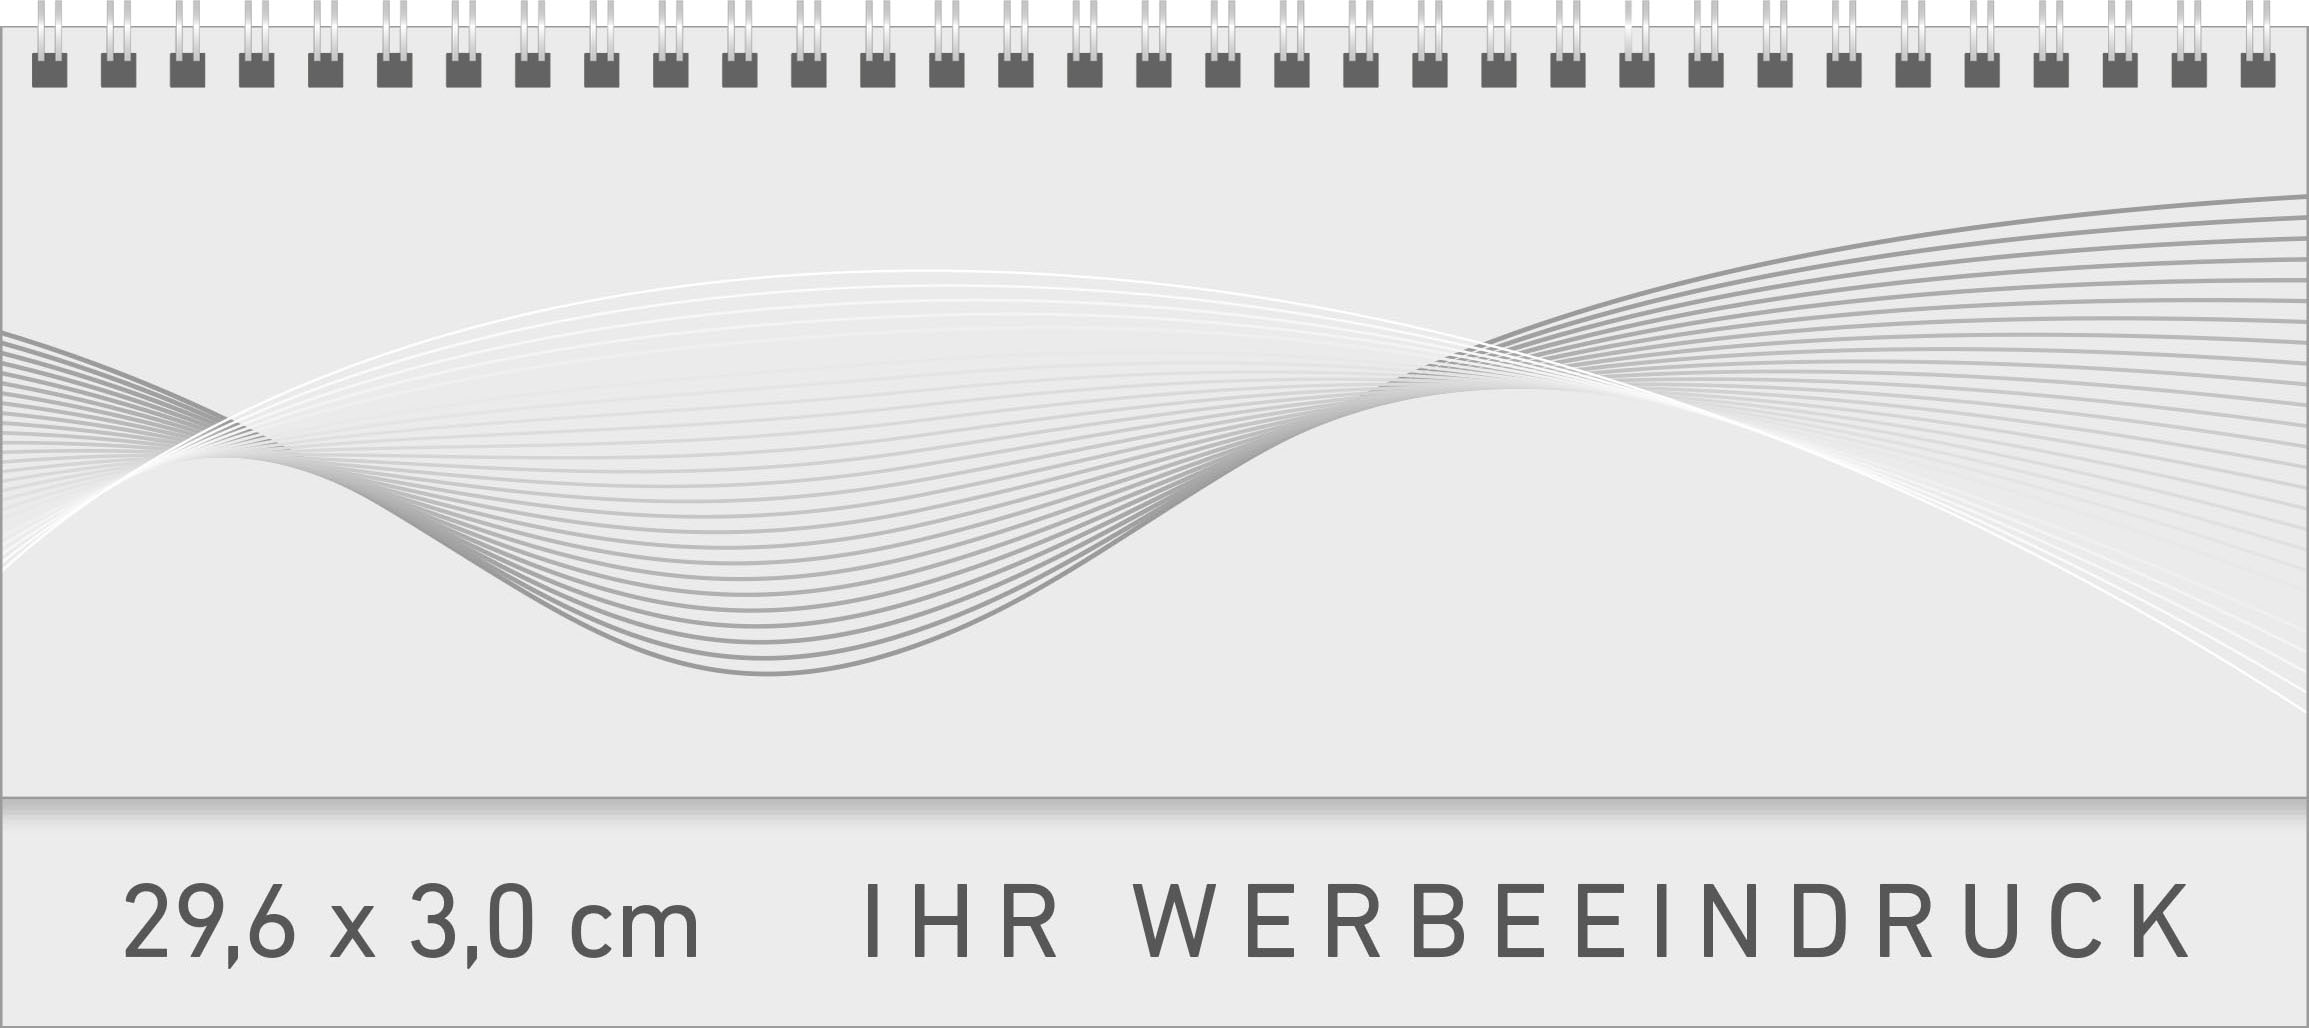 Tischquerkalender Ibiza
Kartoneinband
1 Woche / 1 Seite
Deutsch mit Nebensprachen FR-GB grau/rot